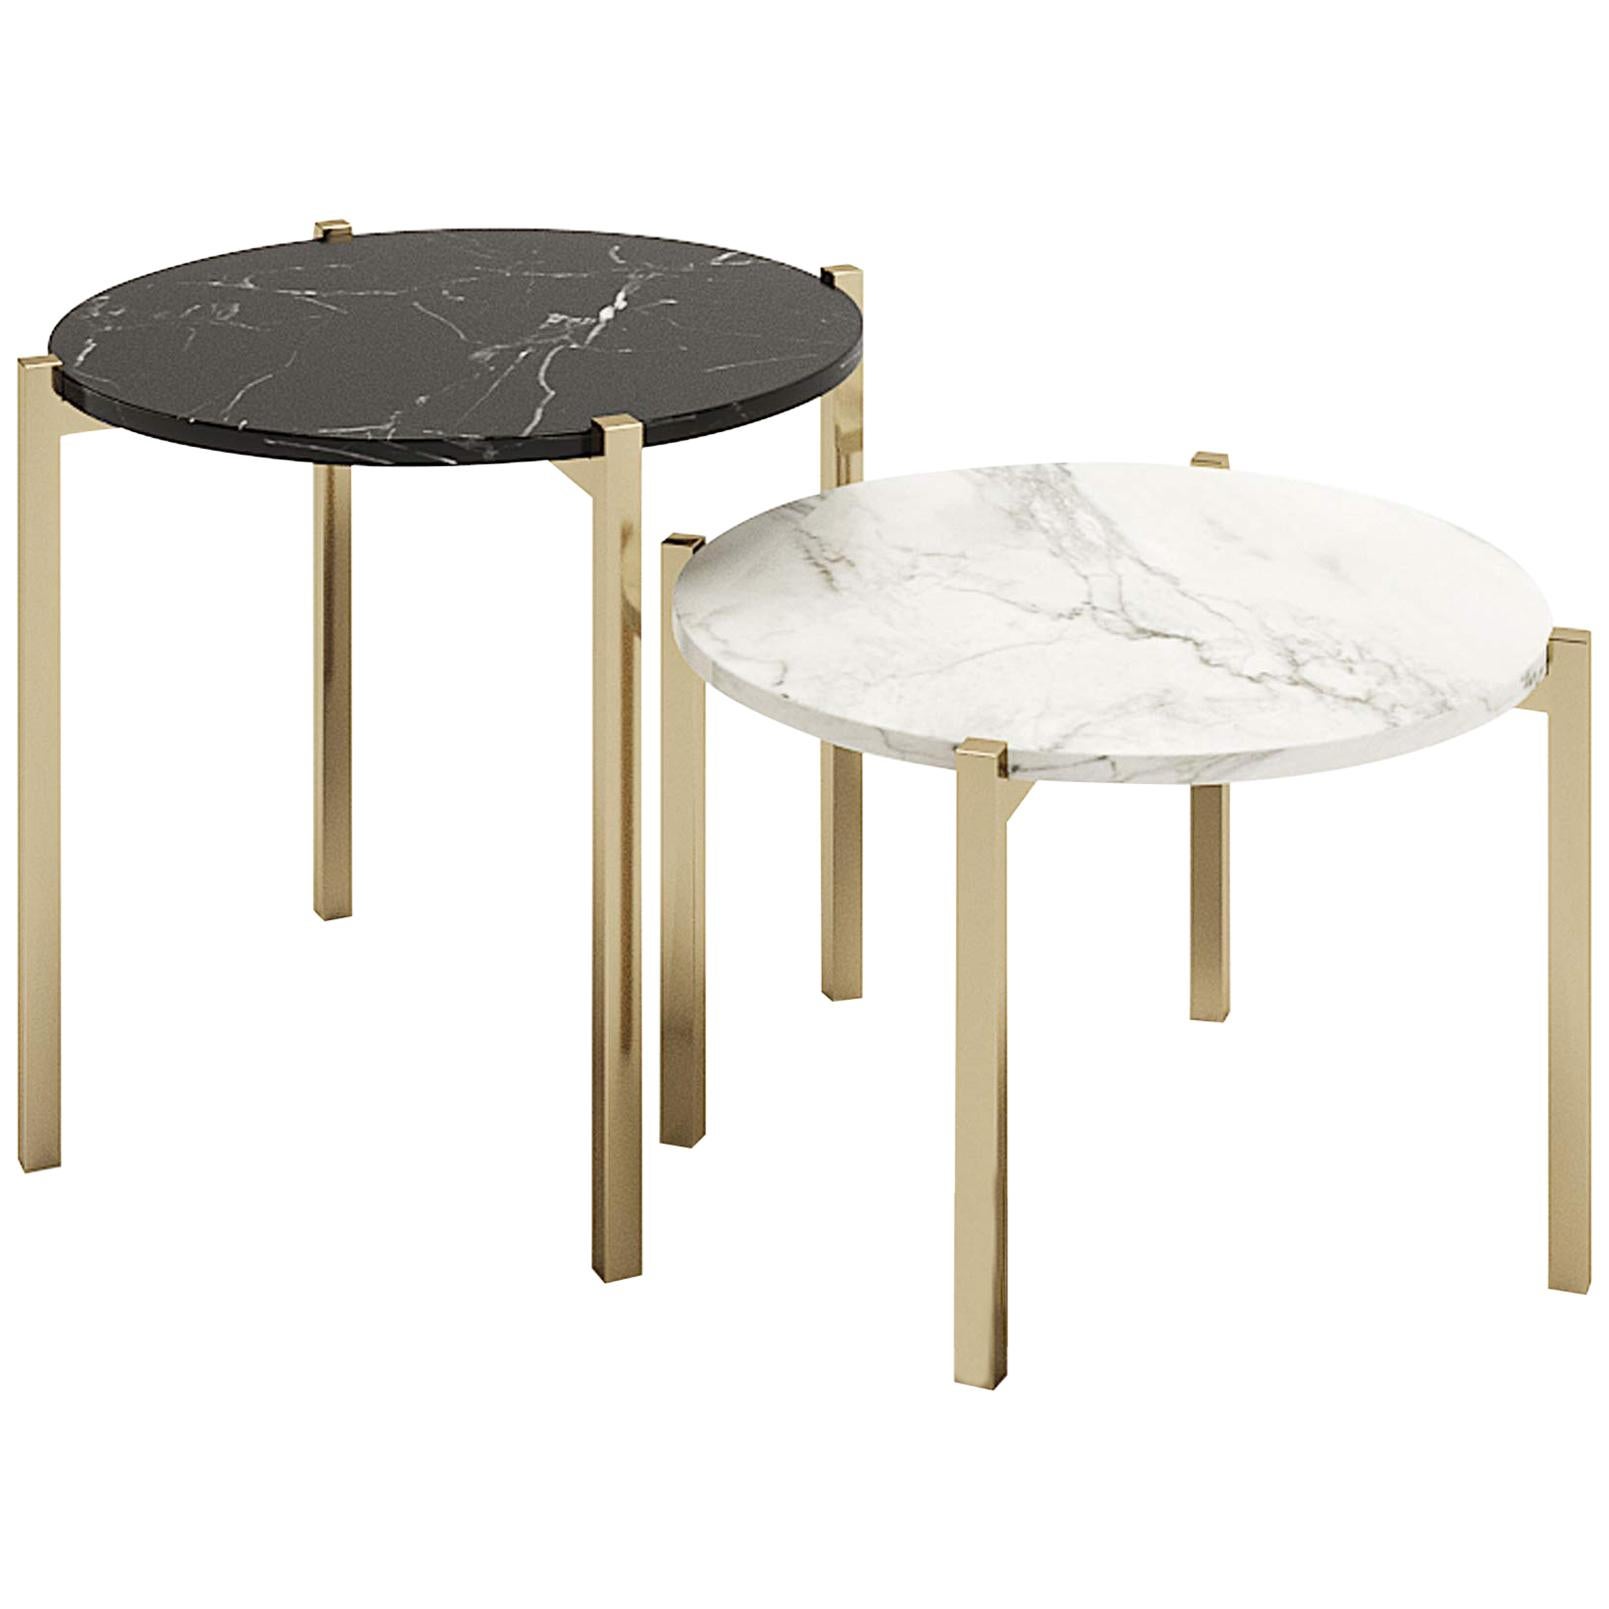 Set aus rundem Tisch, Design-Stil, runder Beistelltisch mit beschichteten Metallbeinen